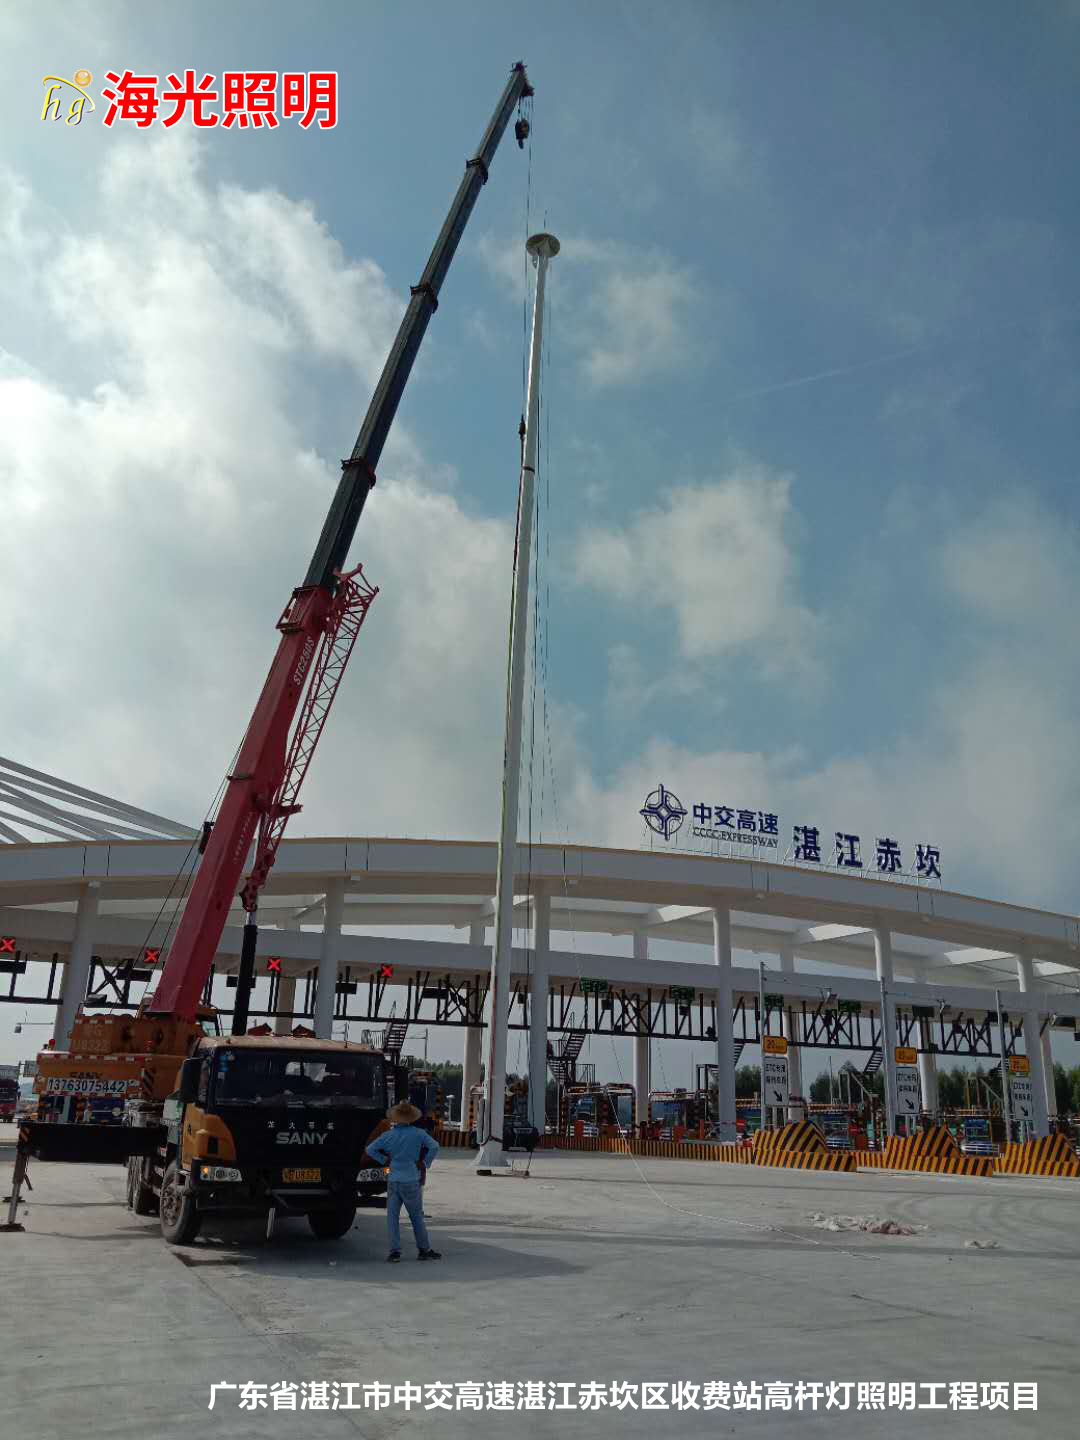 廣東省湛江市中交高速湛江赤坎區收費站高桿燈照明工程項目